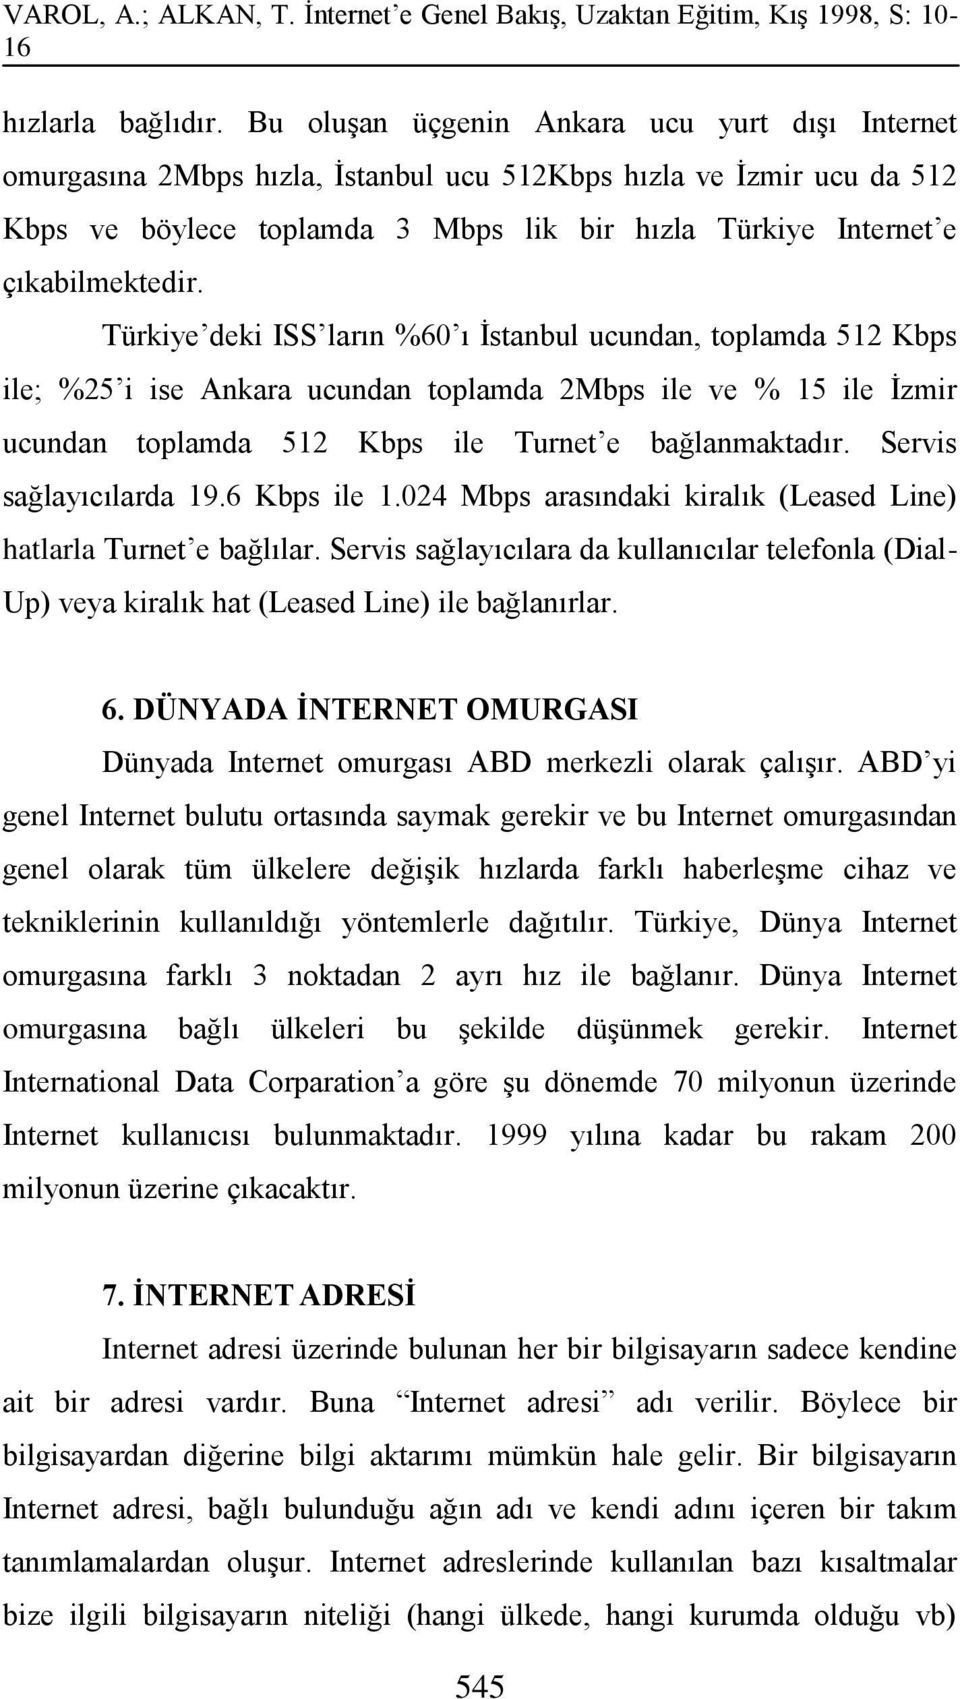 Türkiye deki ISS ların %60 ı İstanbul ucundan, toplamda 512 Kbps ile; %25 i ise Ankara ucundan toplamda 2Mbps ile ve % 15 ile İzmir ucundan toplamda 512 Kbps ile Turnet e bağlanmaktadır.